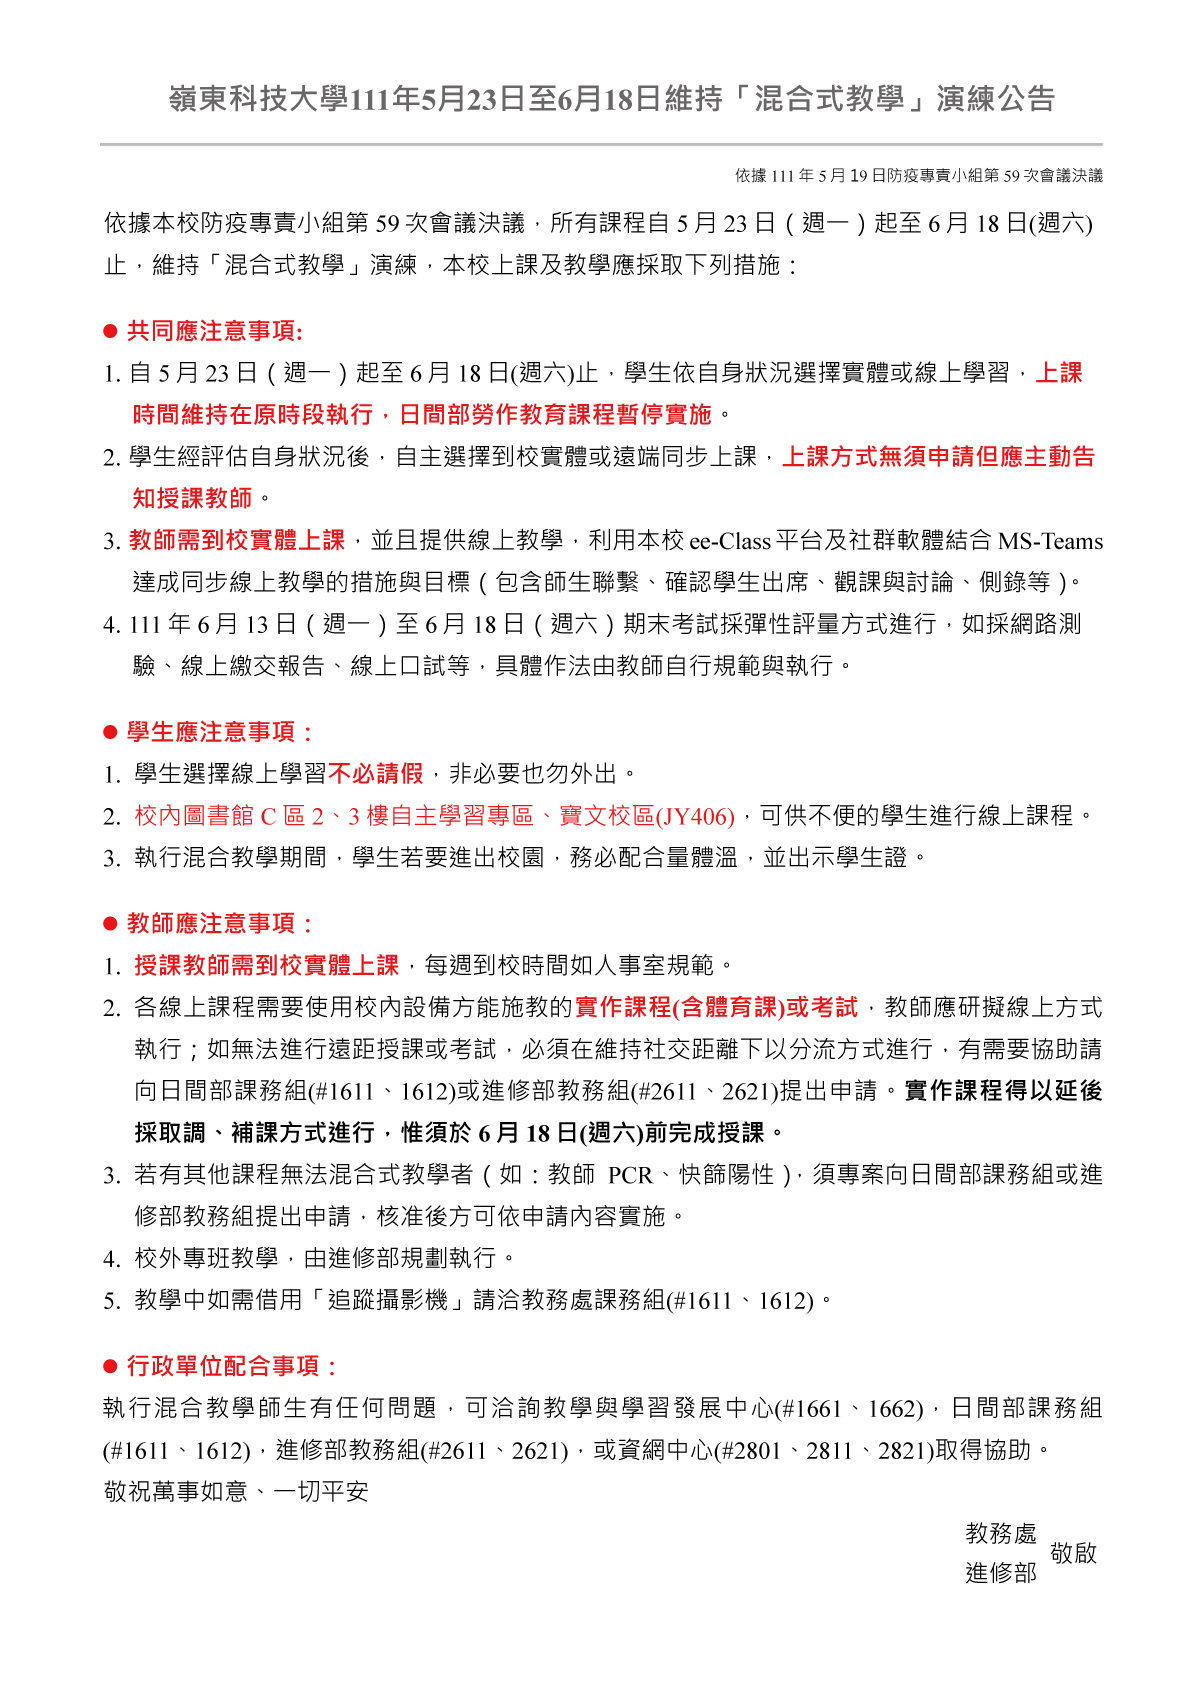 110-2嶺東科技大學111年5月23日至6月18日維持「混合式教學」演練公告